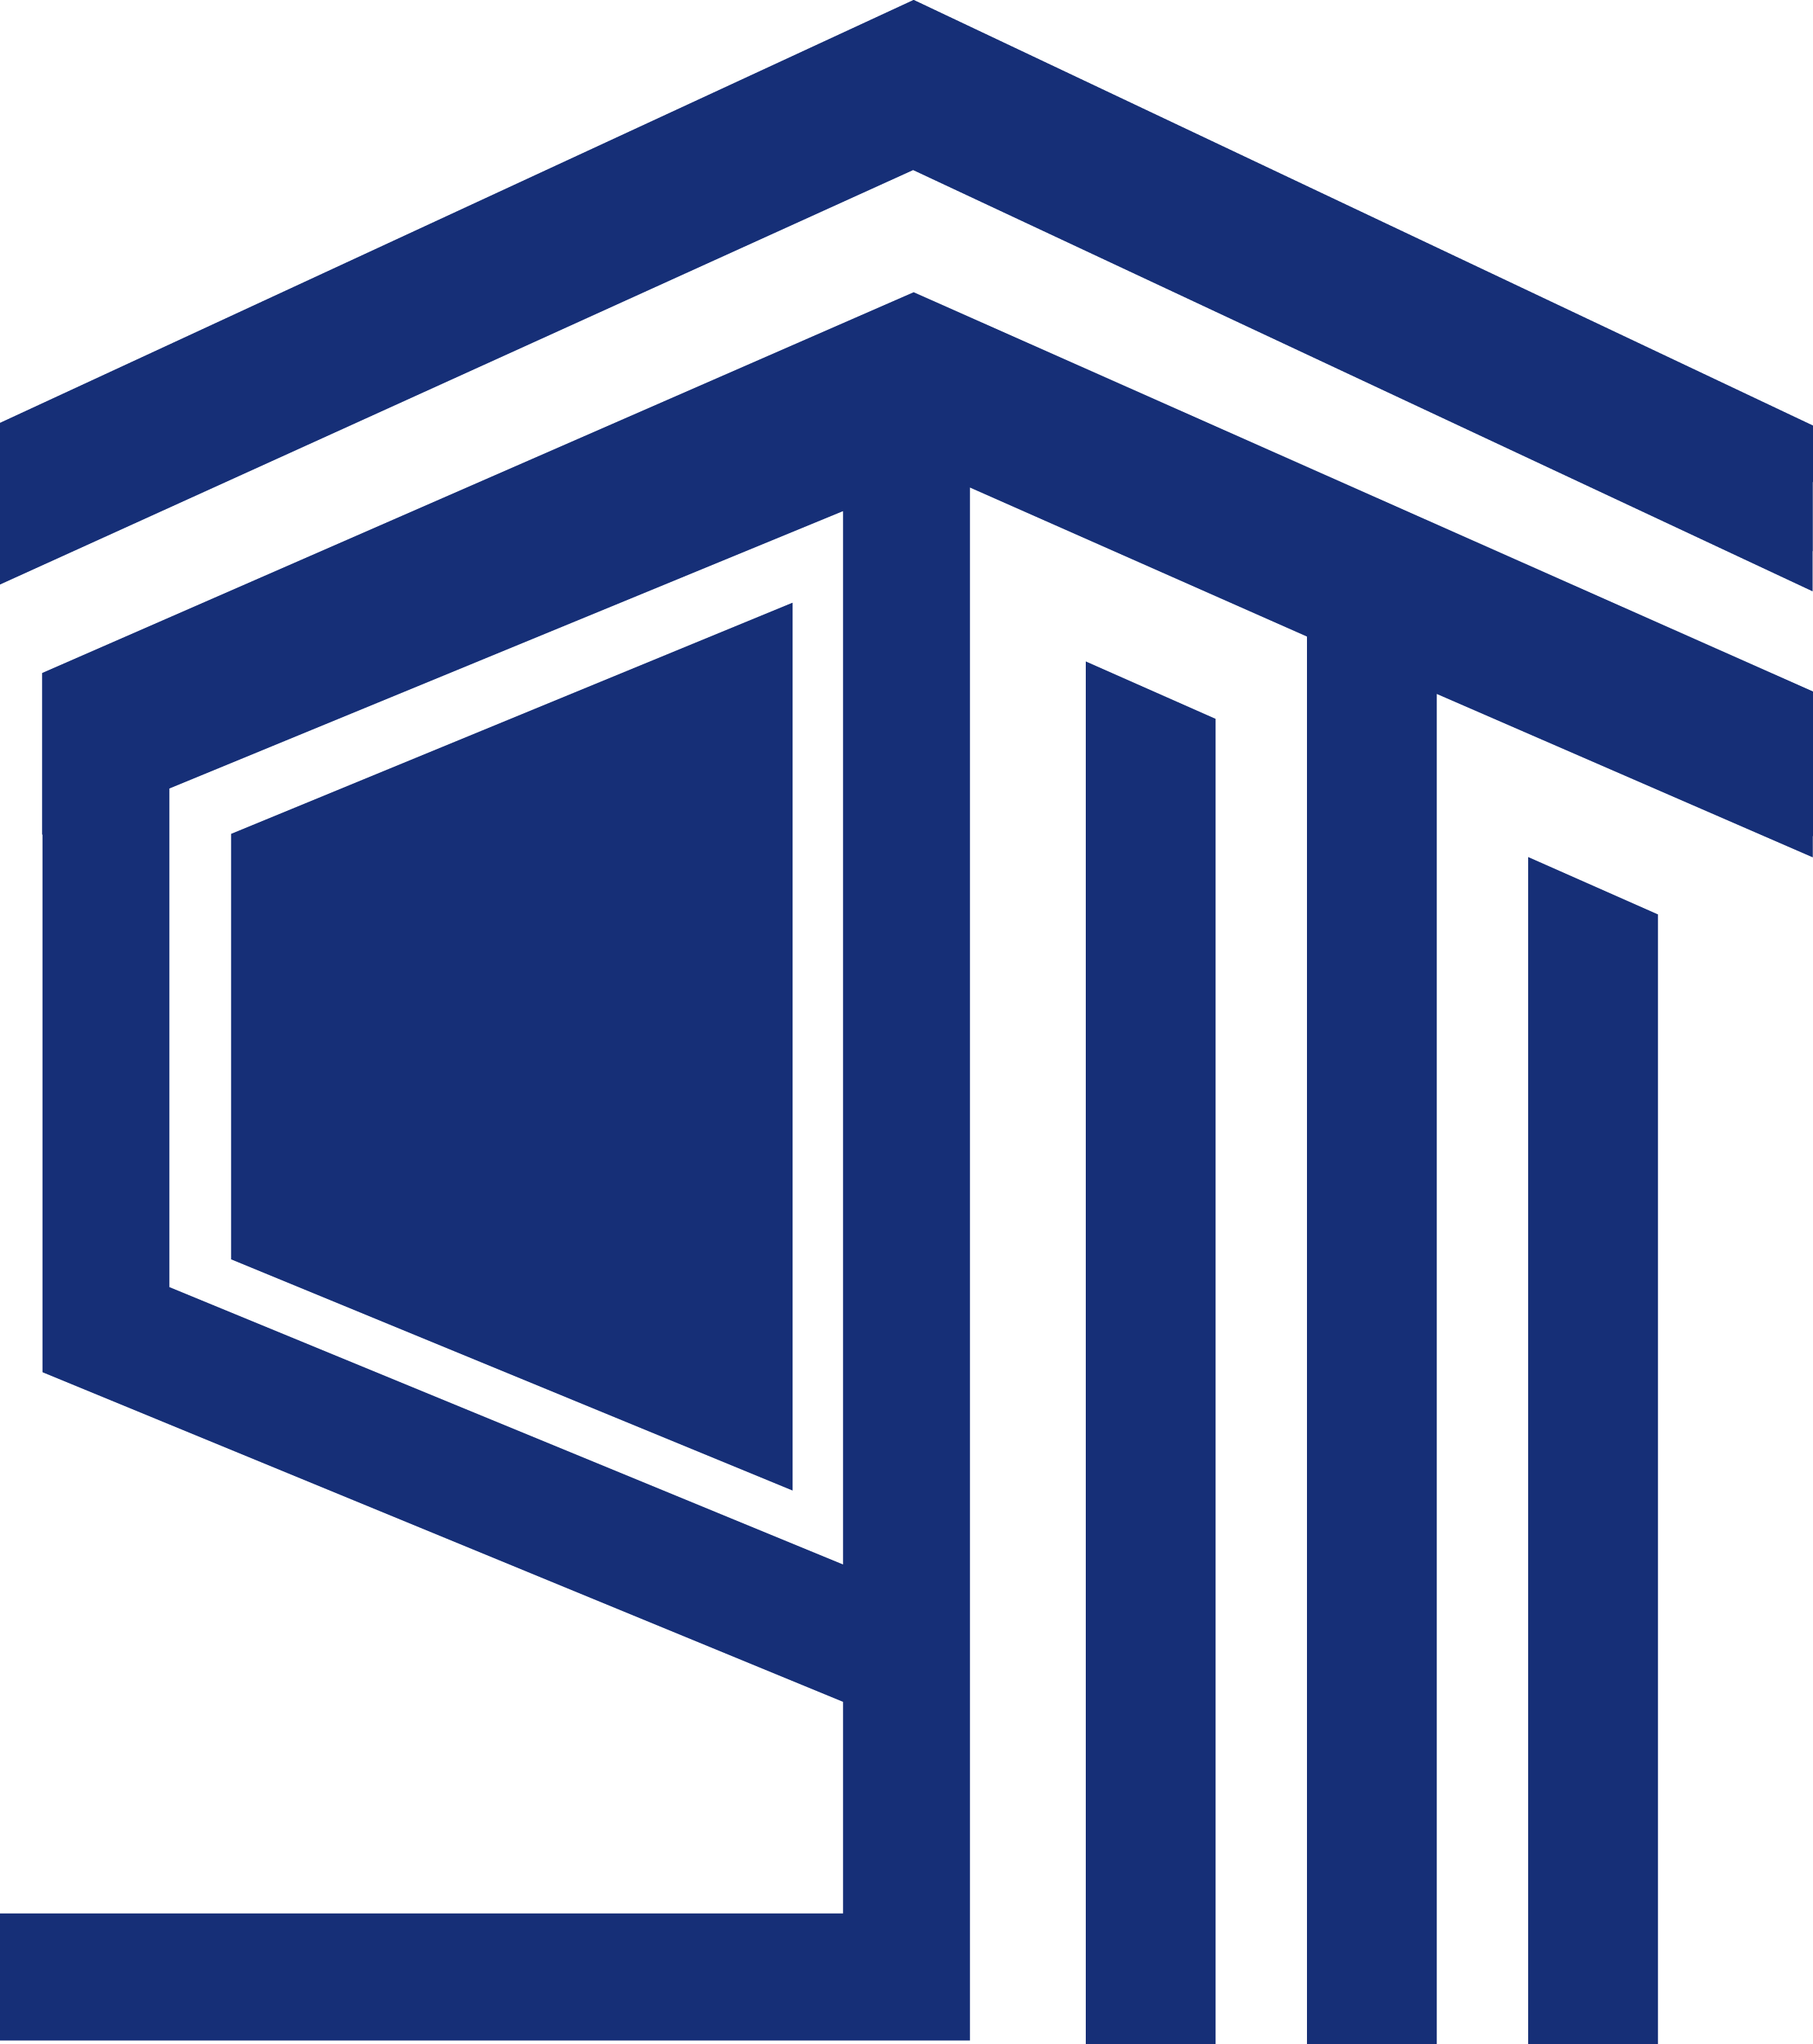 스톤빌리지개발의 계열사 (주)스톤빌리지개발의 로고